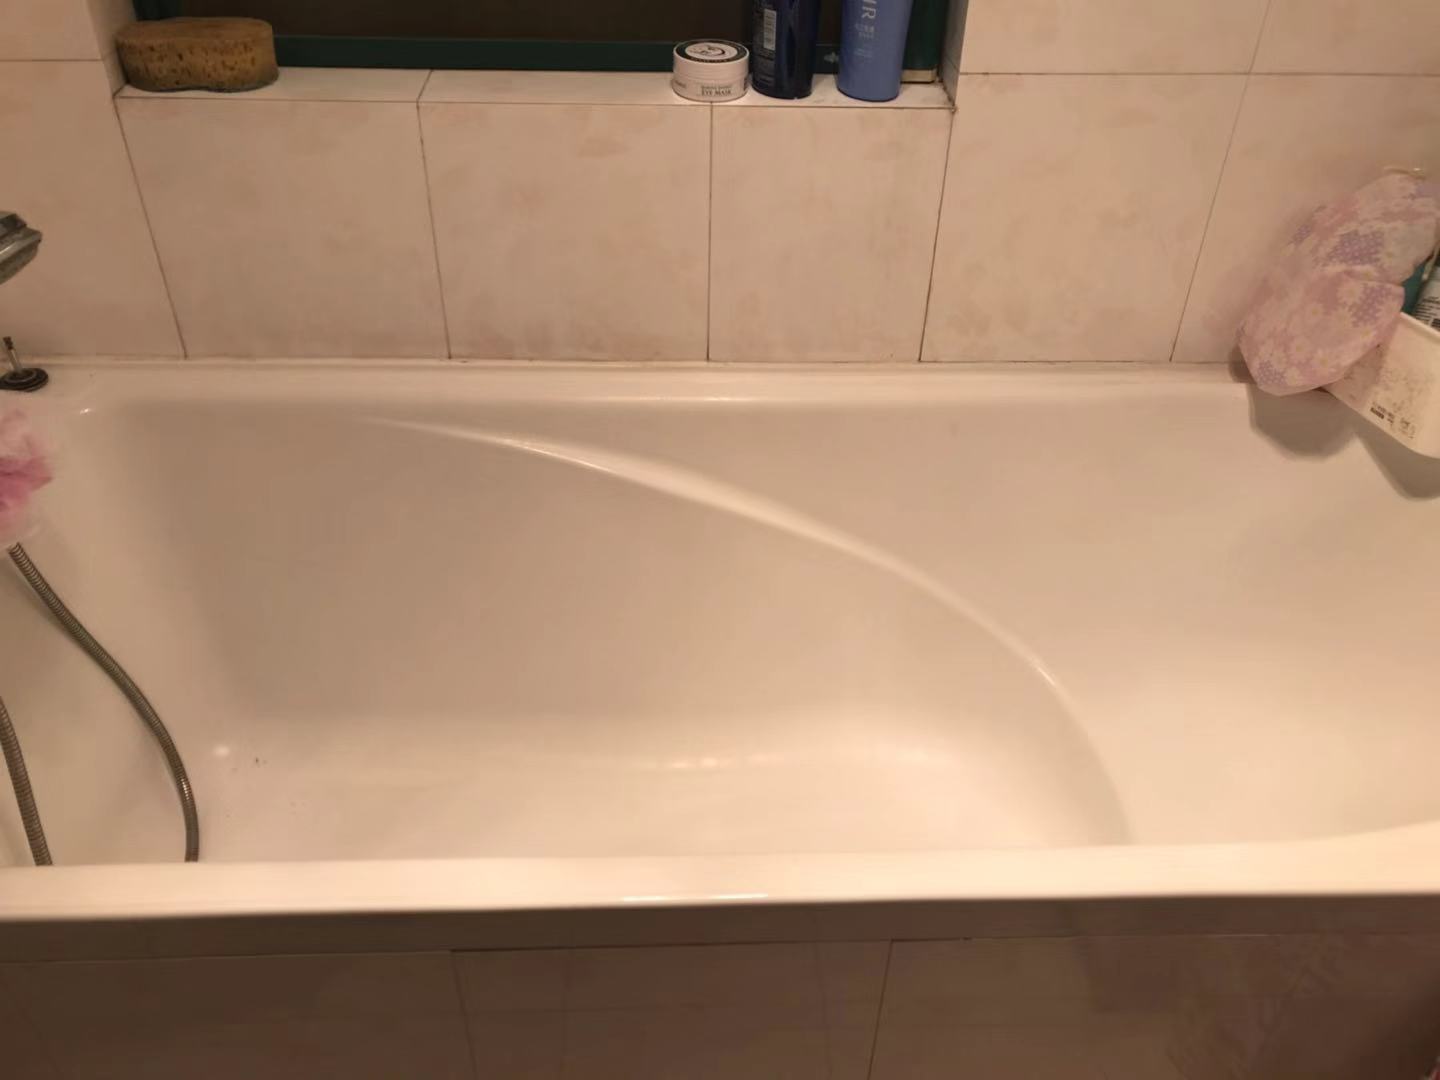 劳芬浴缸维修63185692上海闵行区浴缸维修